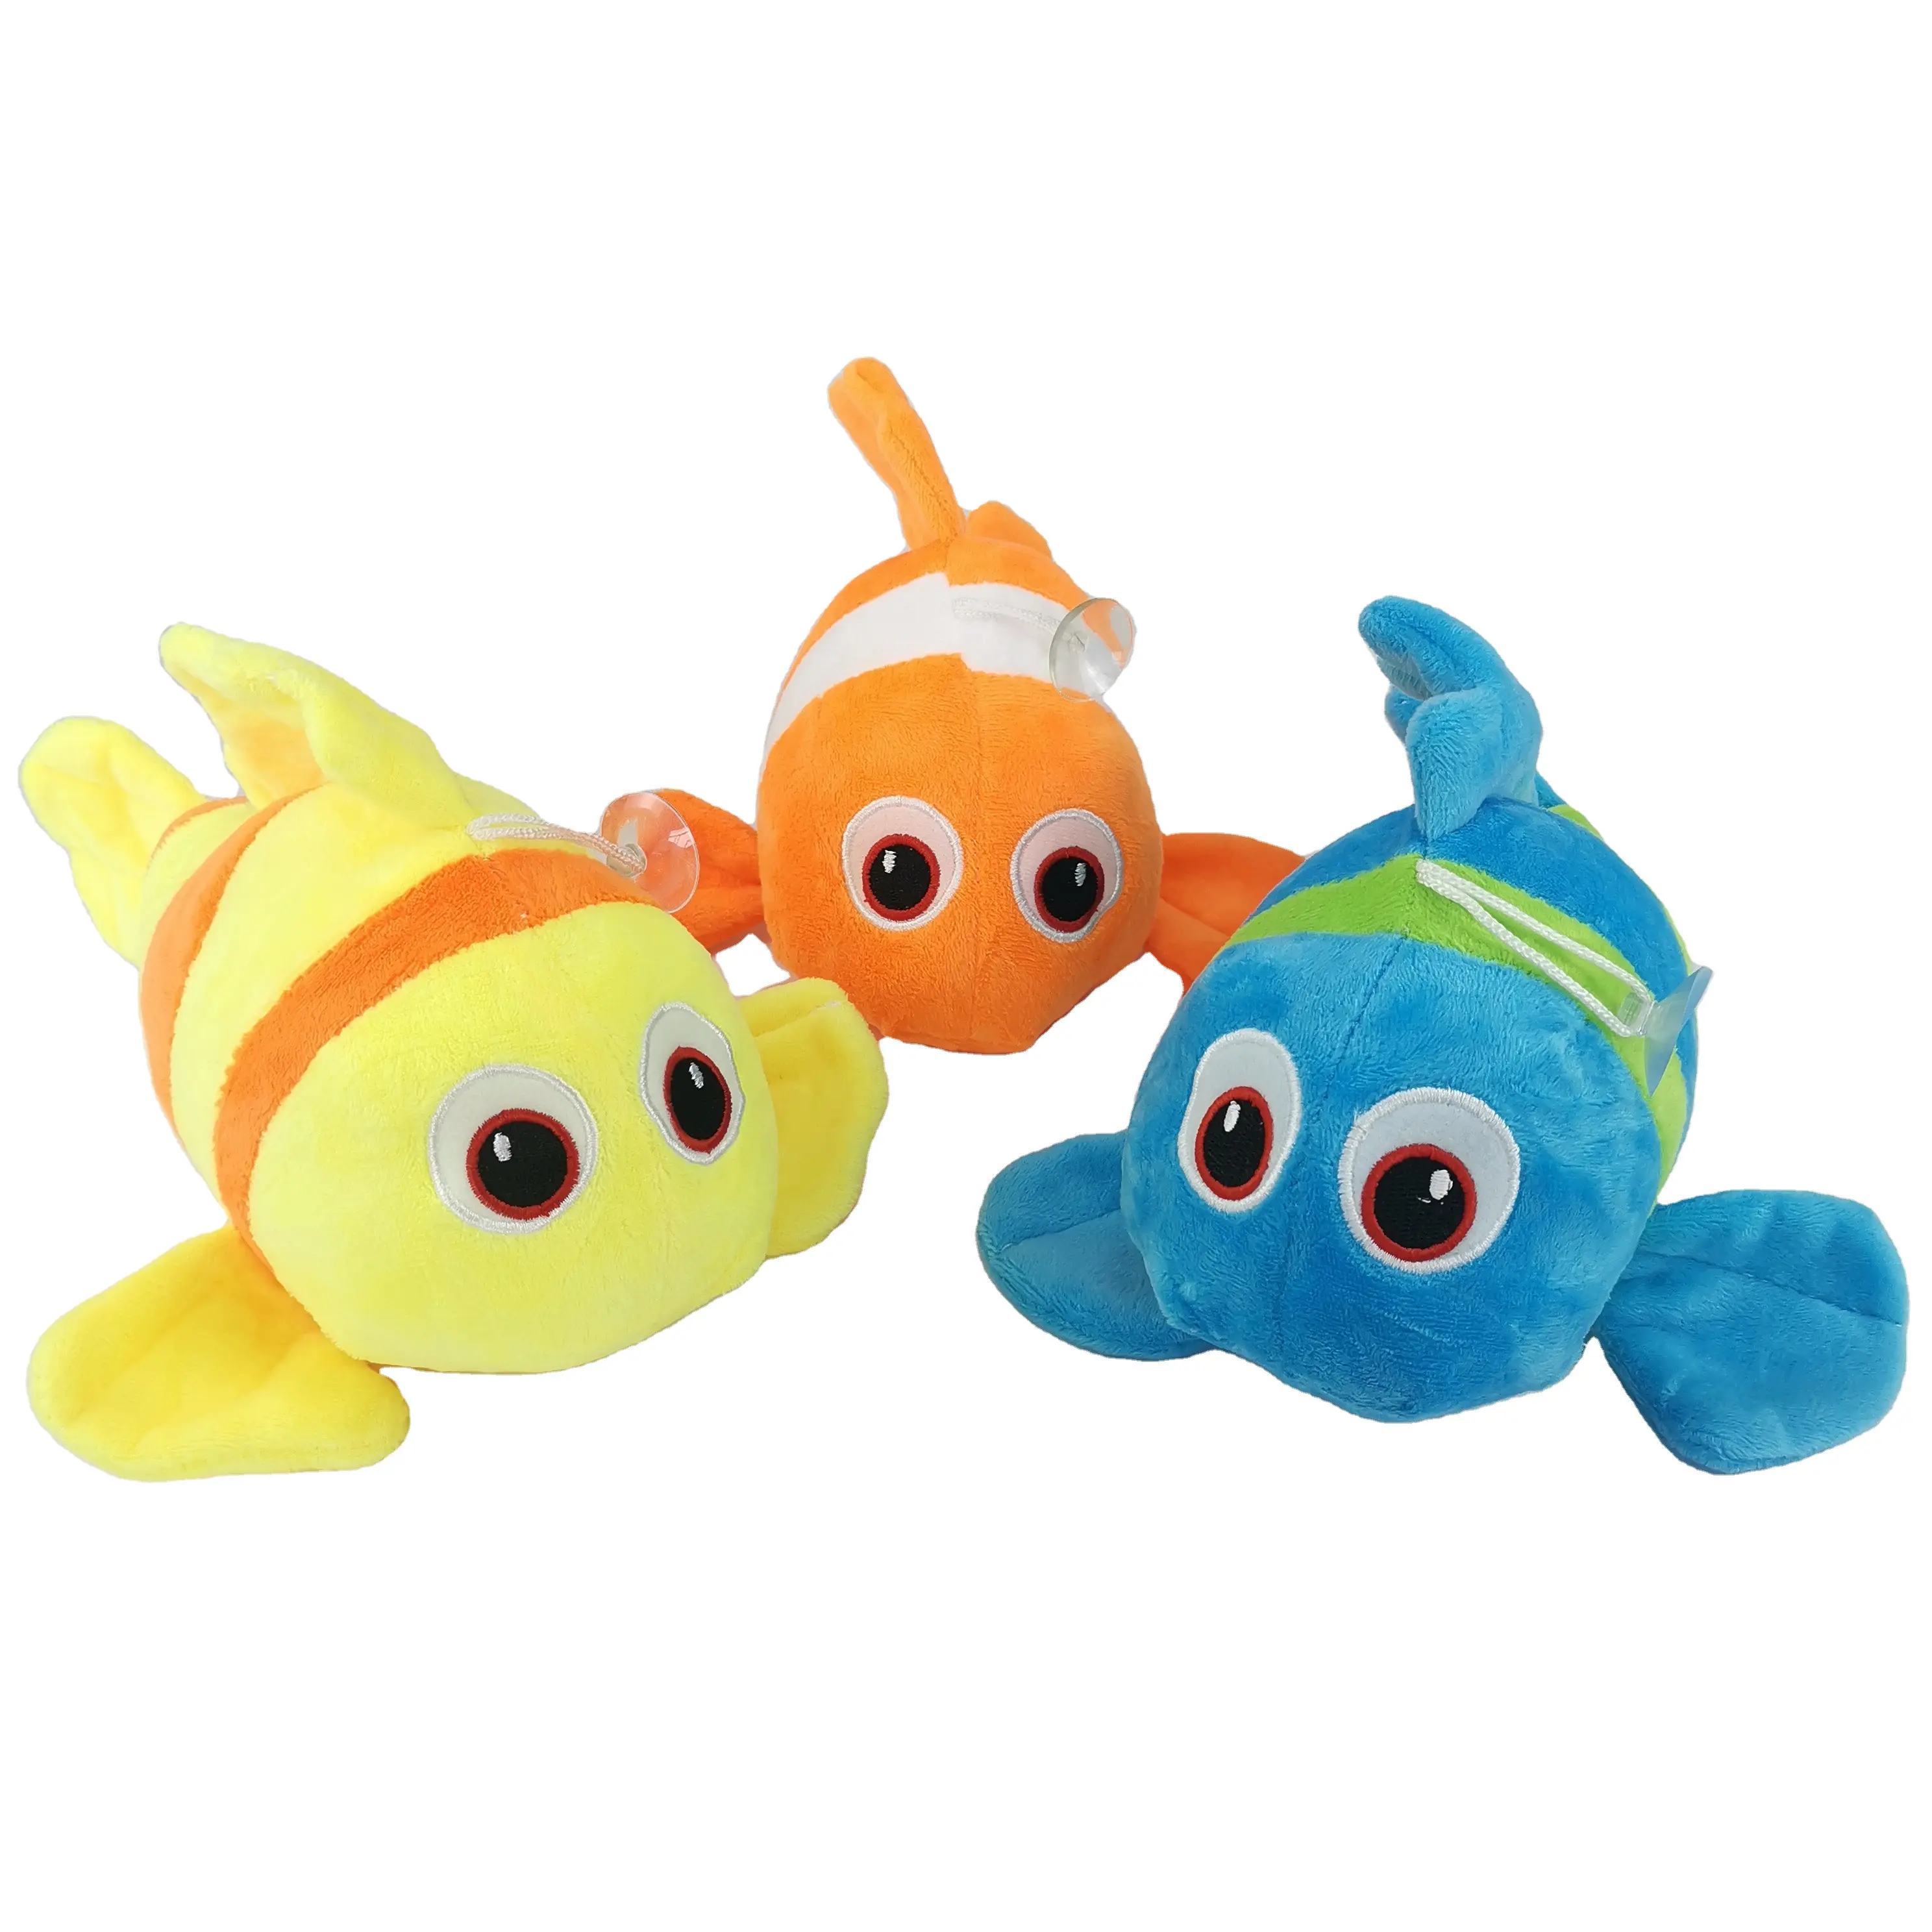 AIFEI TOY Design creativo arcobaleno pagliaccio pesce peluche cuscino carino colorato pesce tropicale peluche farcito animali marini giocattolo